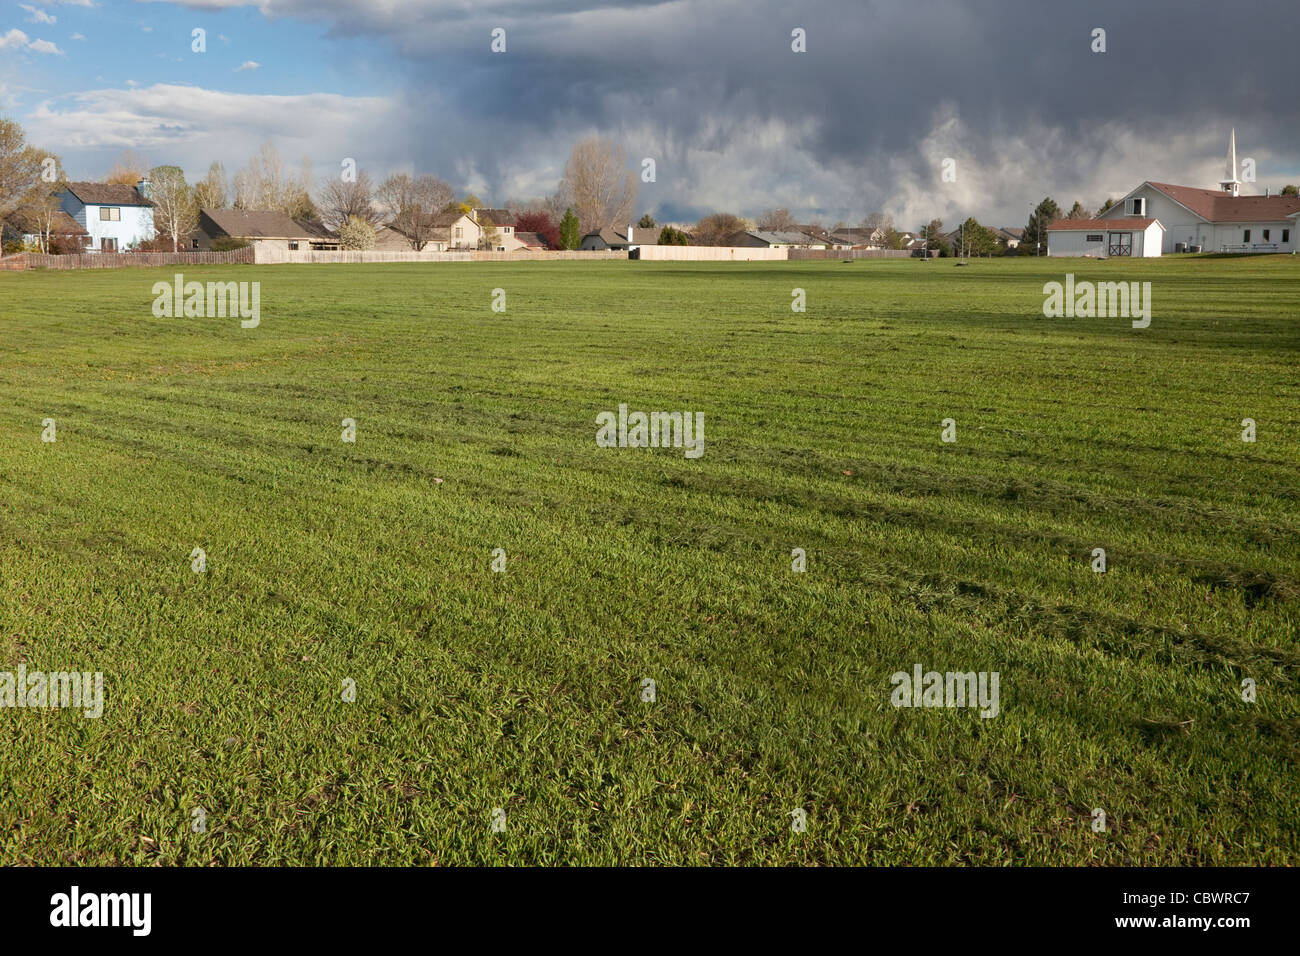 Recién segada, campo grande de hierba con viviendas, iglesia y grandes nubes de tormenta en segundo plano. Foto de stock